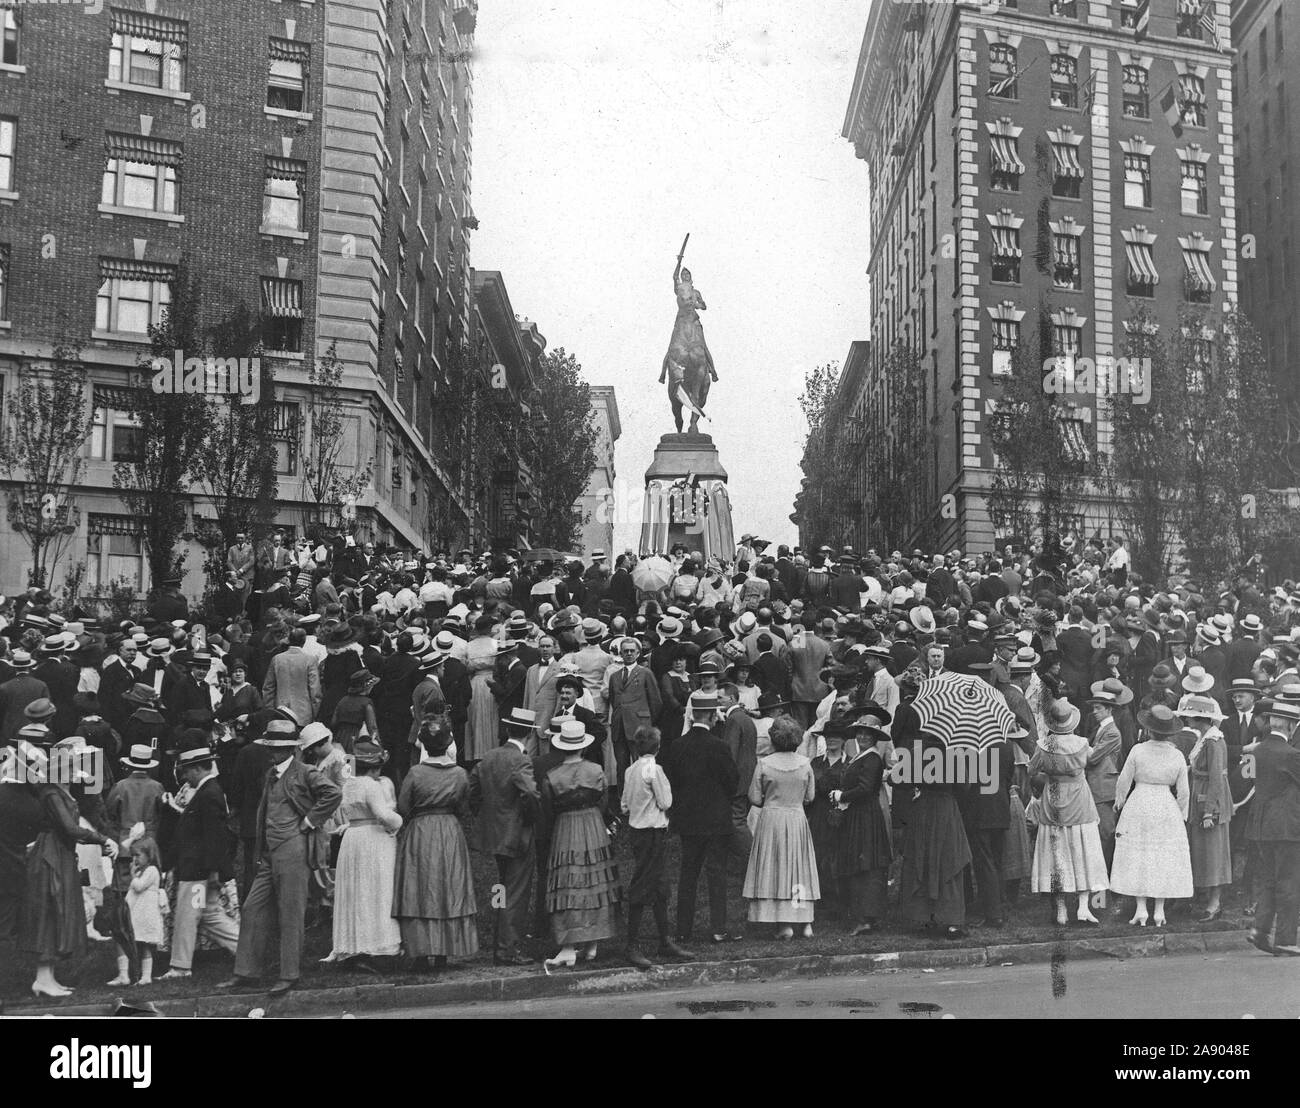 Zeremonien - Tag der Bastille, 1918 - Feier zum Tag der Bastille, 1918, New York City. Allgemeine Überprüfung der Bastille Tag Zeremonien am Jeanne d'Arc Statue, NEW YORK City Stockfoto